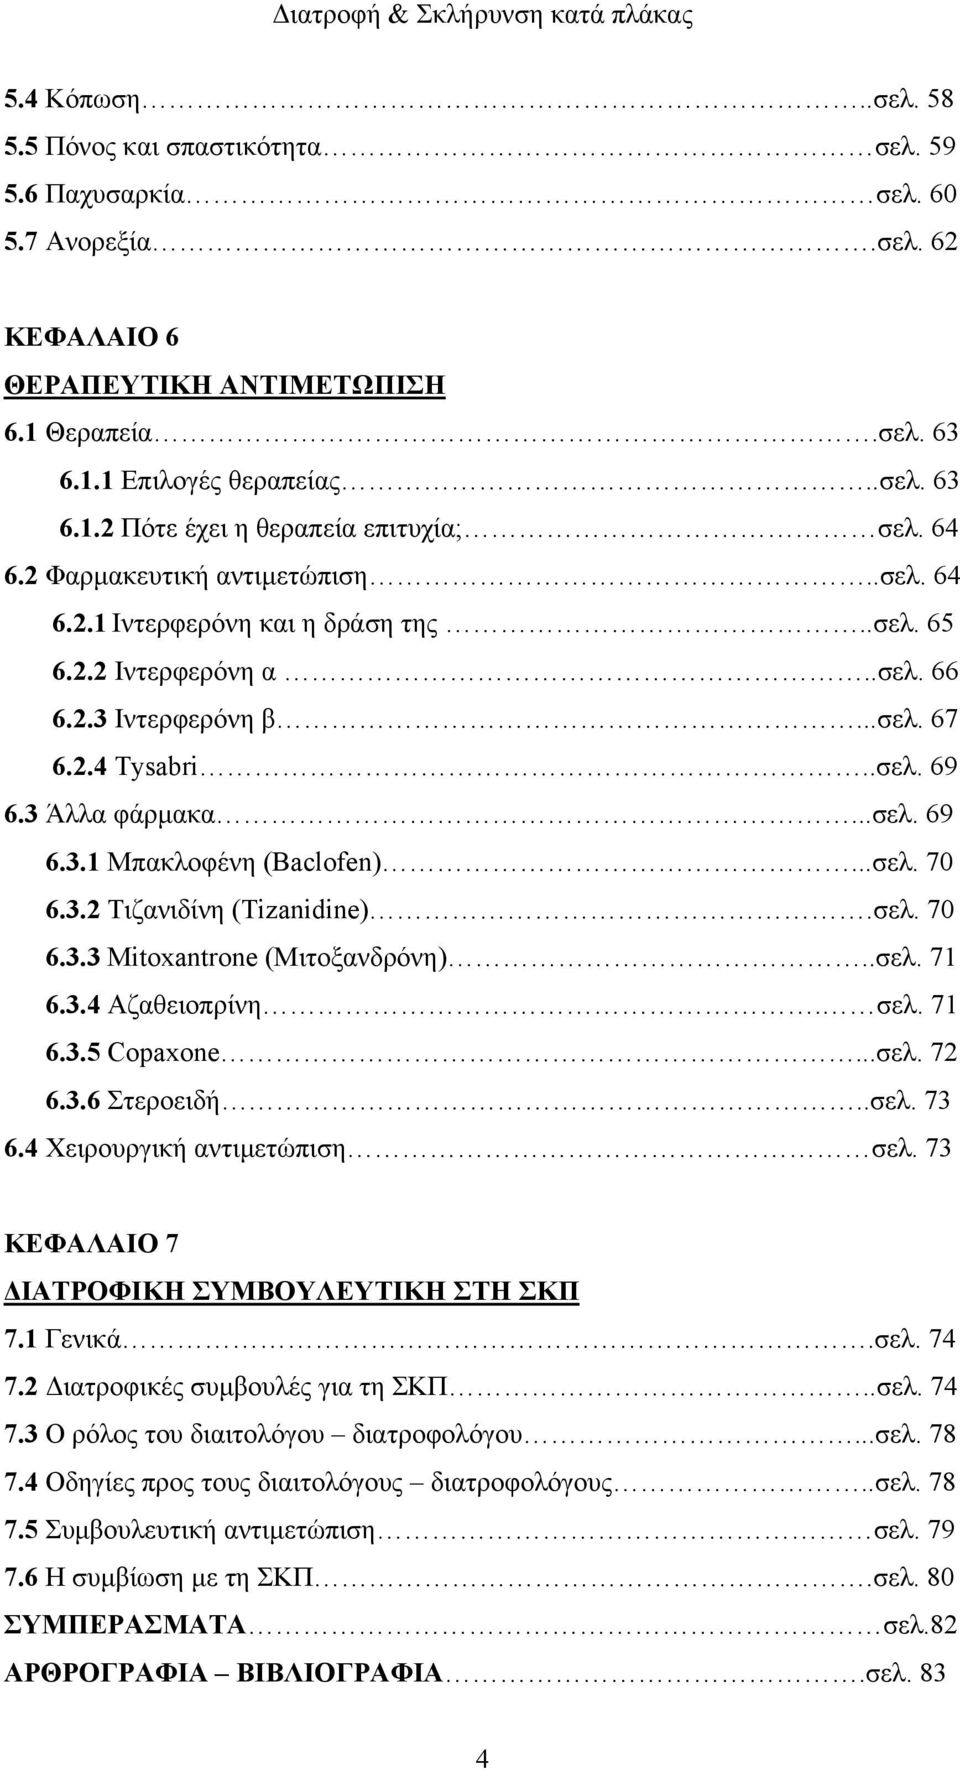 ..σελ. 70 6.3.2 Τιζανιδίνη (Tizanidine).σελ. 70 6.3.3 Mitoxantrone (Μιτοξανδρόνη)..σελ. 71 6.3.4 Αζαθειοπρίνη. σελ. 71 6.3.5 Copaxone...σελ. 72 6.3.6 Στεροειδή..σελ. 73 6.